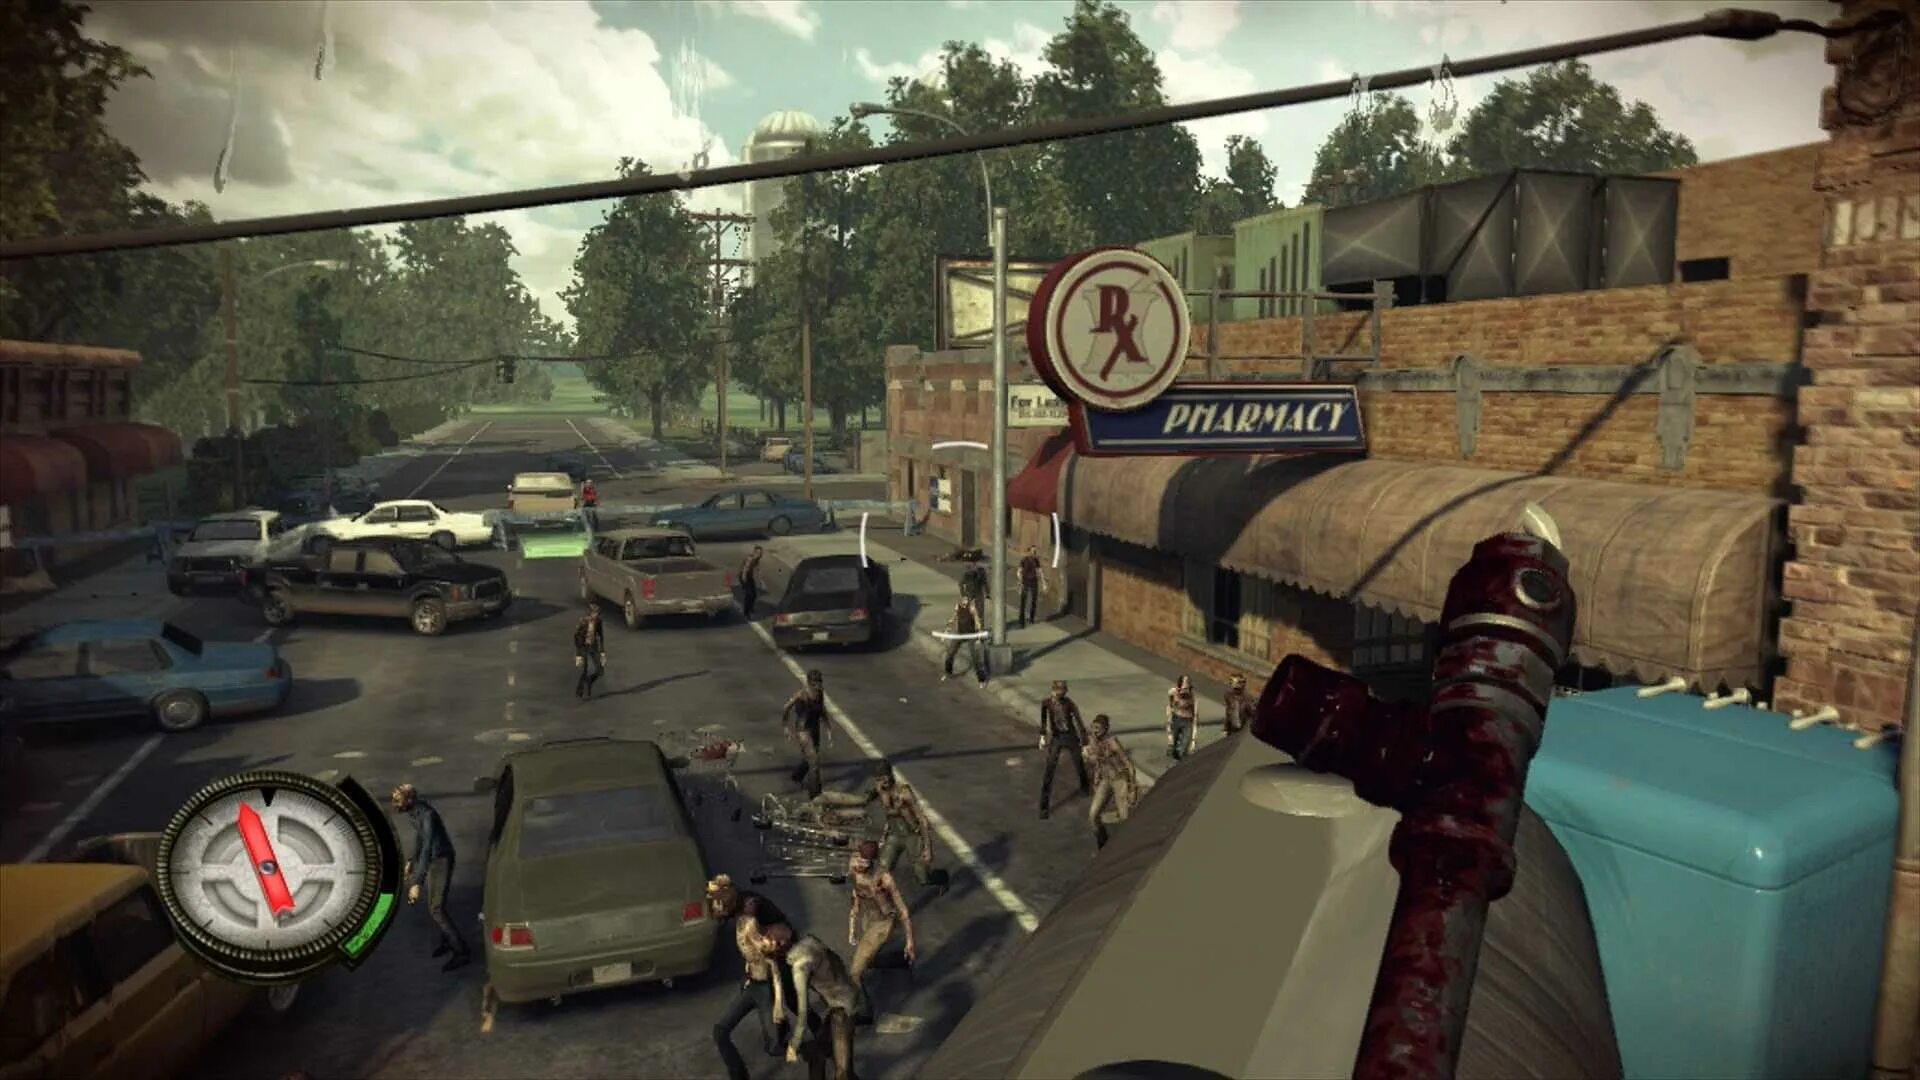 1 игра в мире покажи. Walking Dead инстинкт выживания ps3. The Walking Dead инстинкт выживания Xbox 360. Walking Dead игра Xbox 360. Walking Dead инстинкт выживания ps3 геймплей.